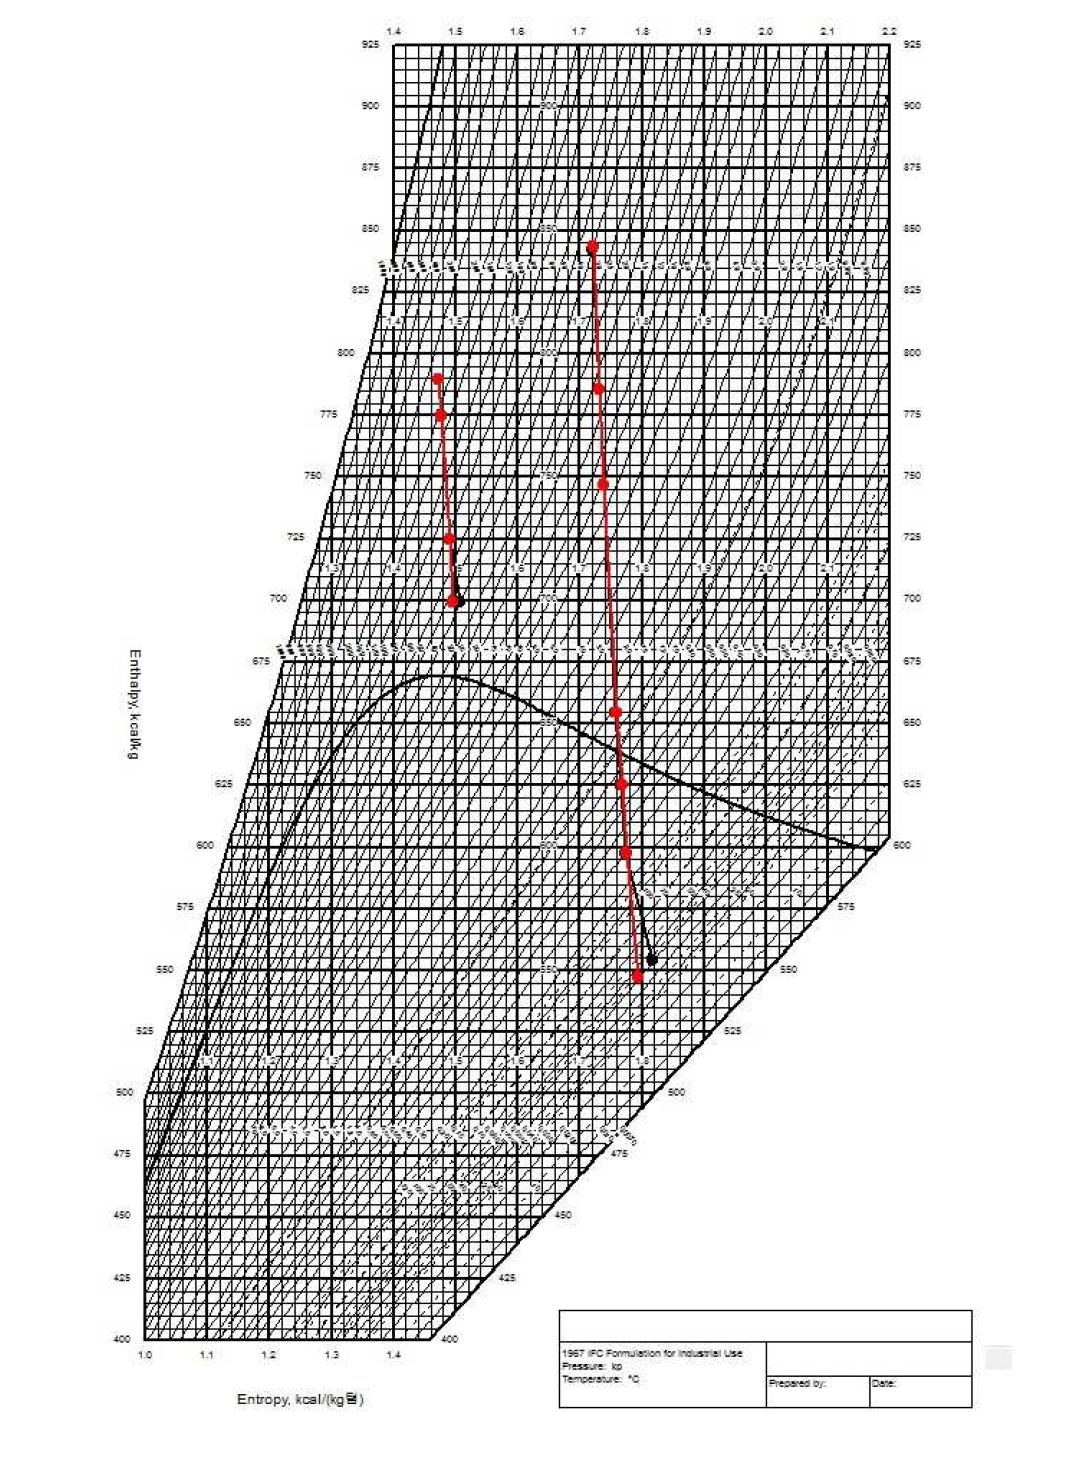 설계열평형도와 설계참조모델의 Mollier Diagram (VWO)